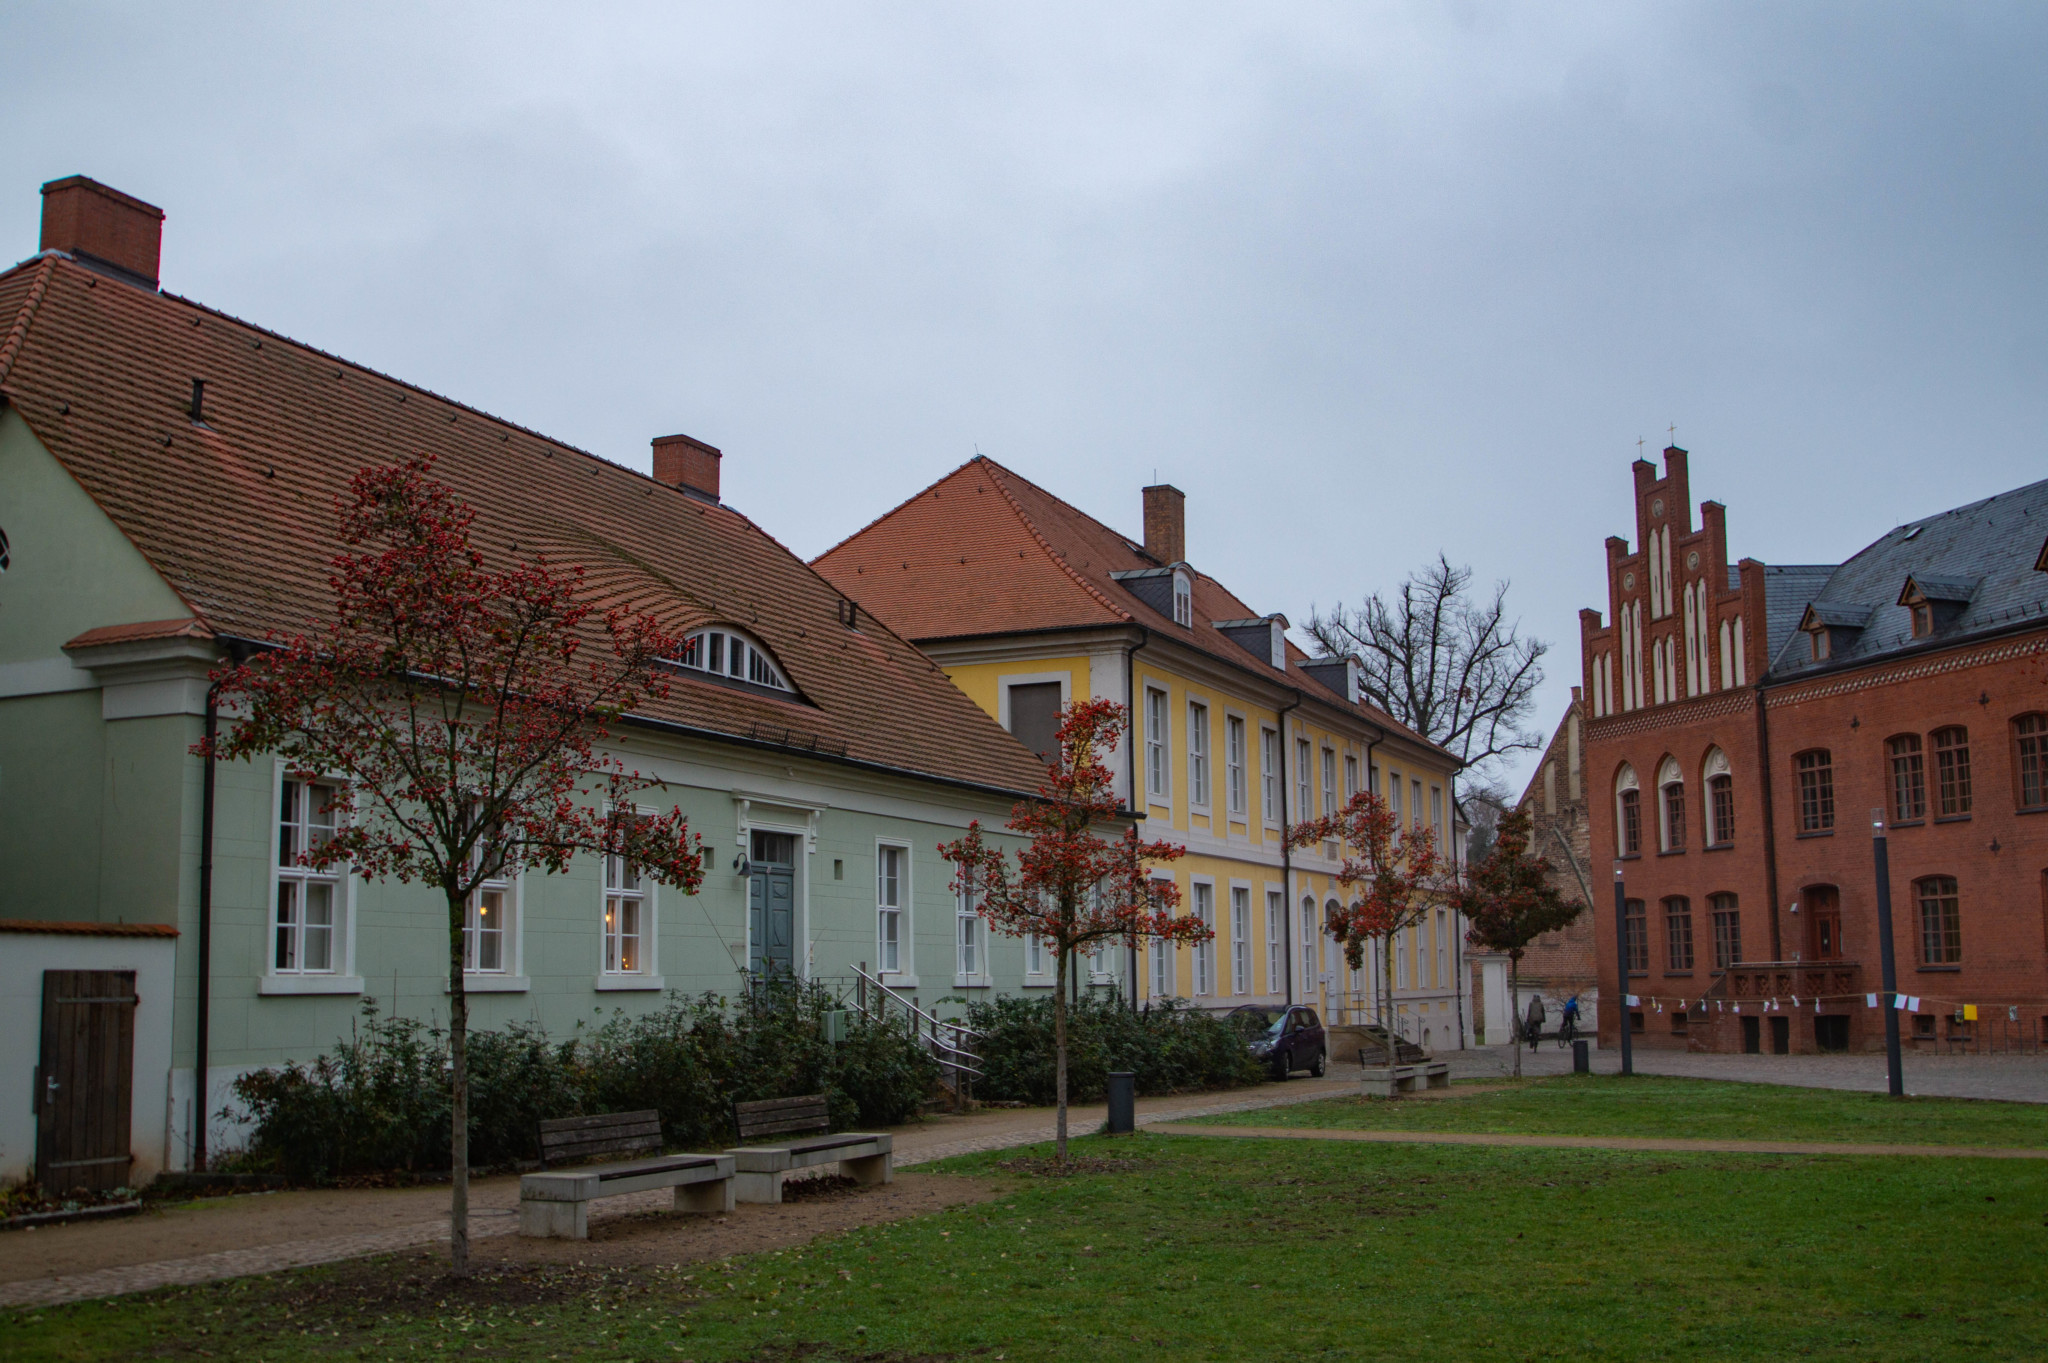 Innenhof vom Dom zu Brandenburg in Brandenburg an der Havel